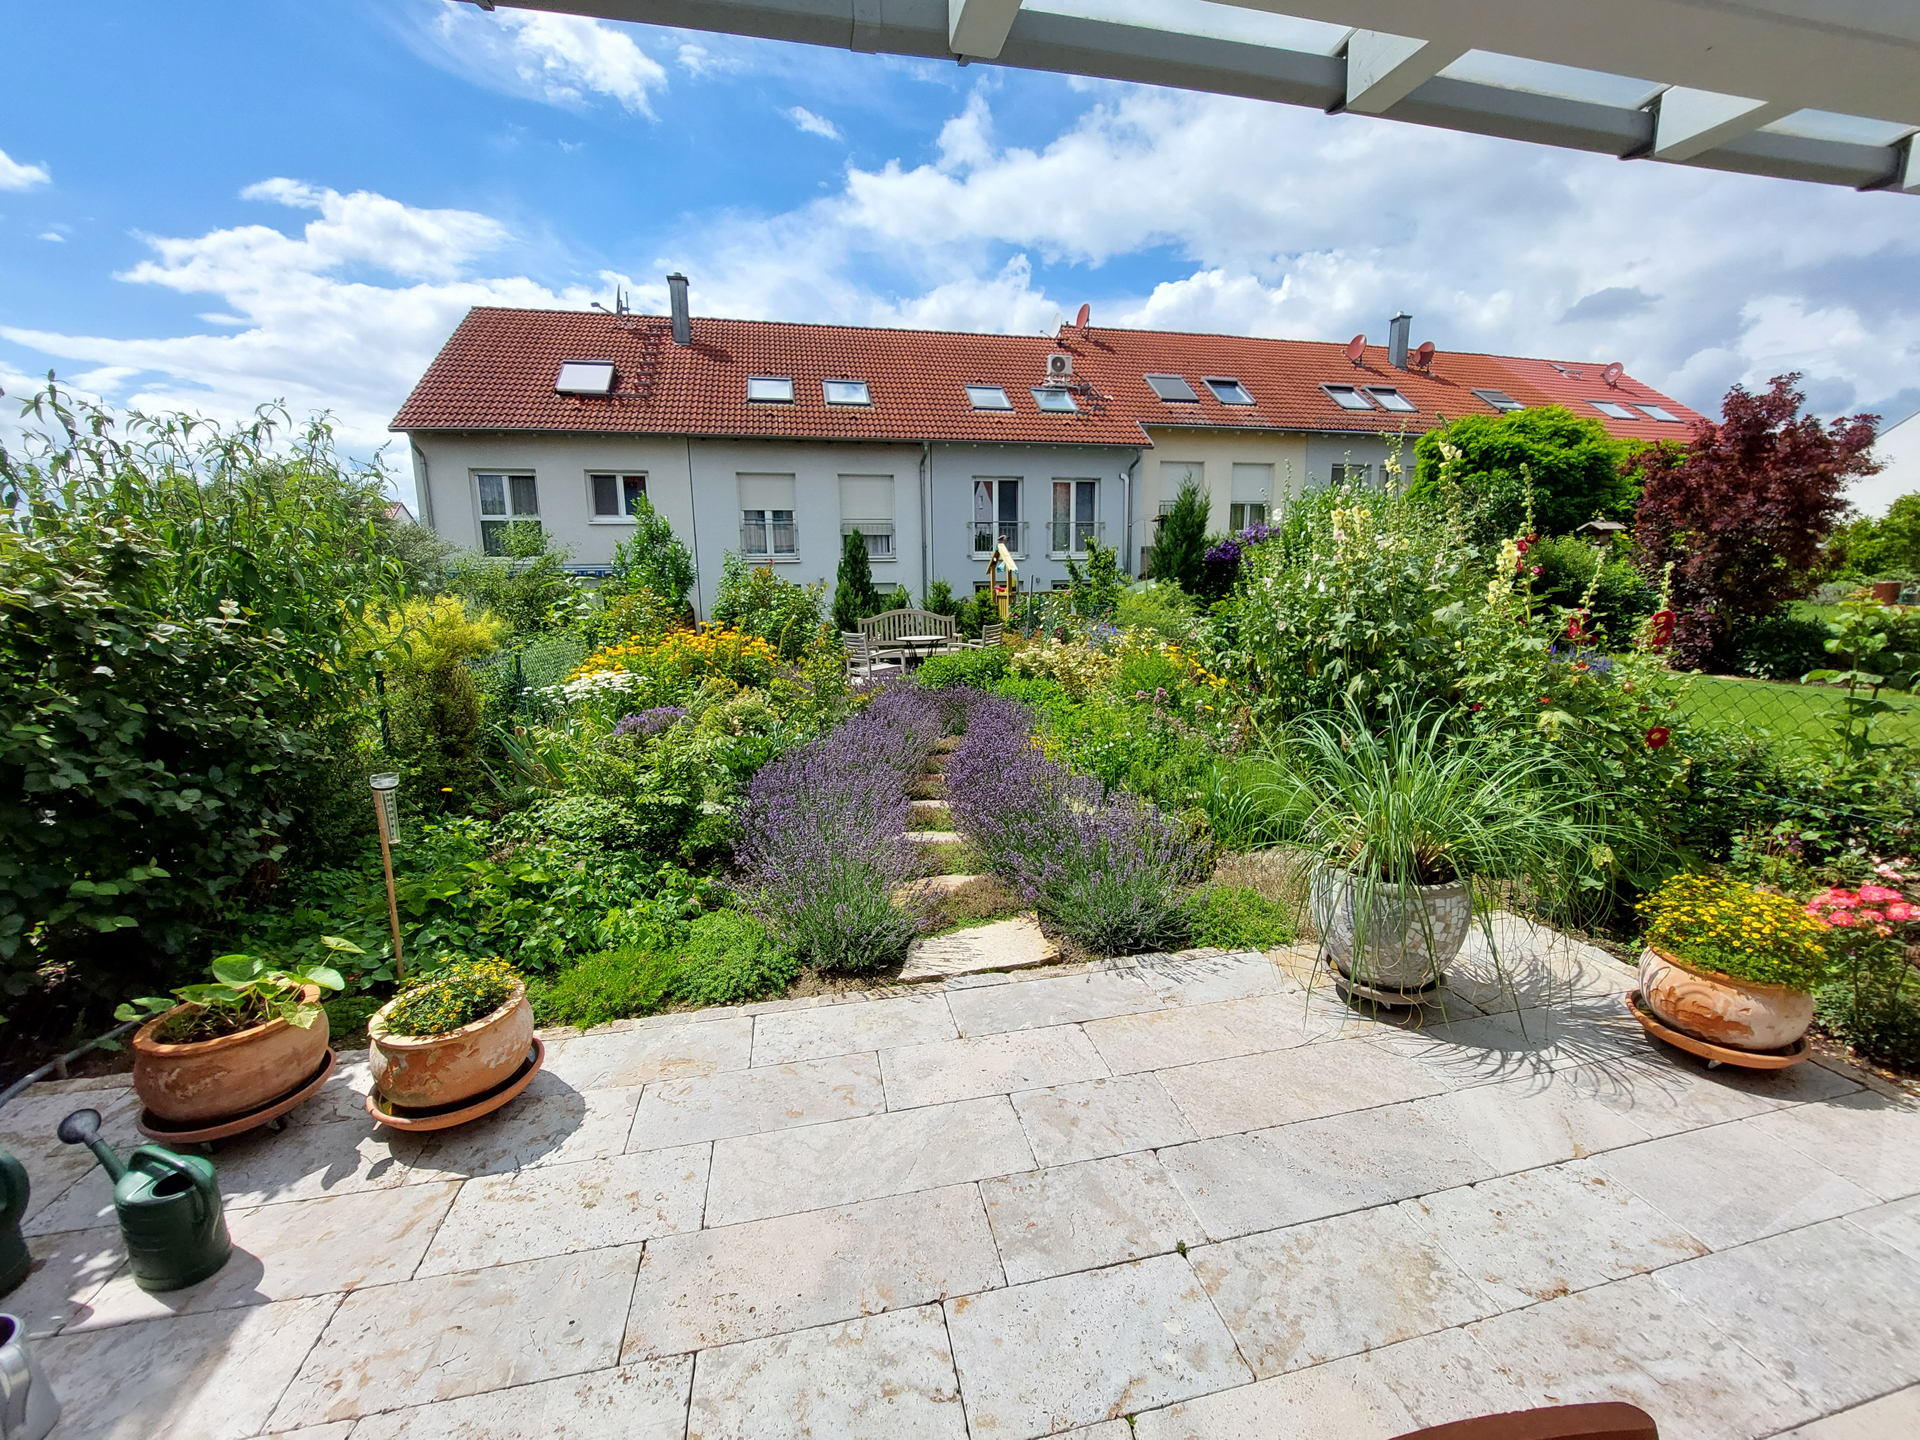 Referenzen: Gartengestaltung Eckhard Morat bei Würzburg